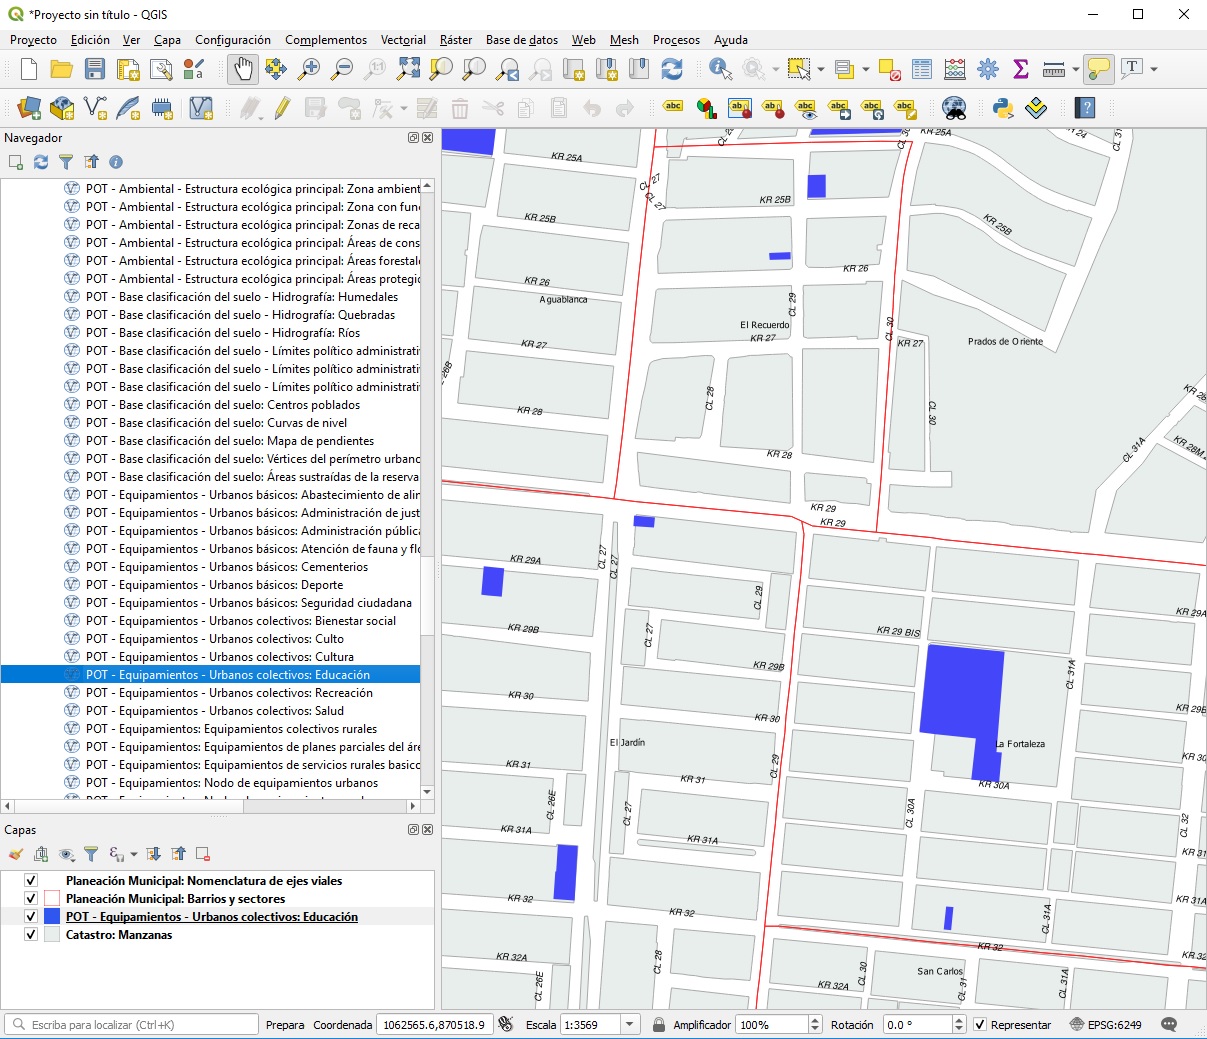 Imagen del software QGIS; en la zona izquierda se muestran cargados los servicios WFS y en el área del mapa, se visualizan las capas de manzanas, barrios, nomenclatura y equipamiento educativo.